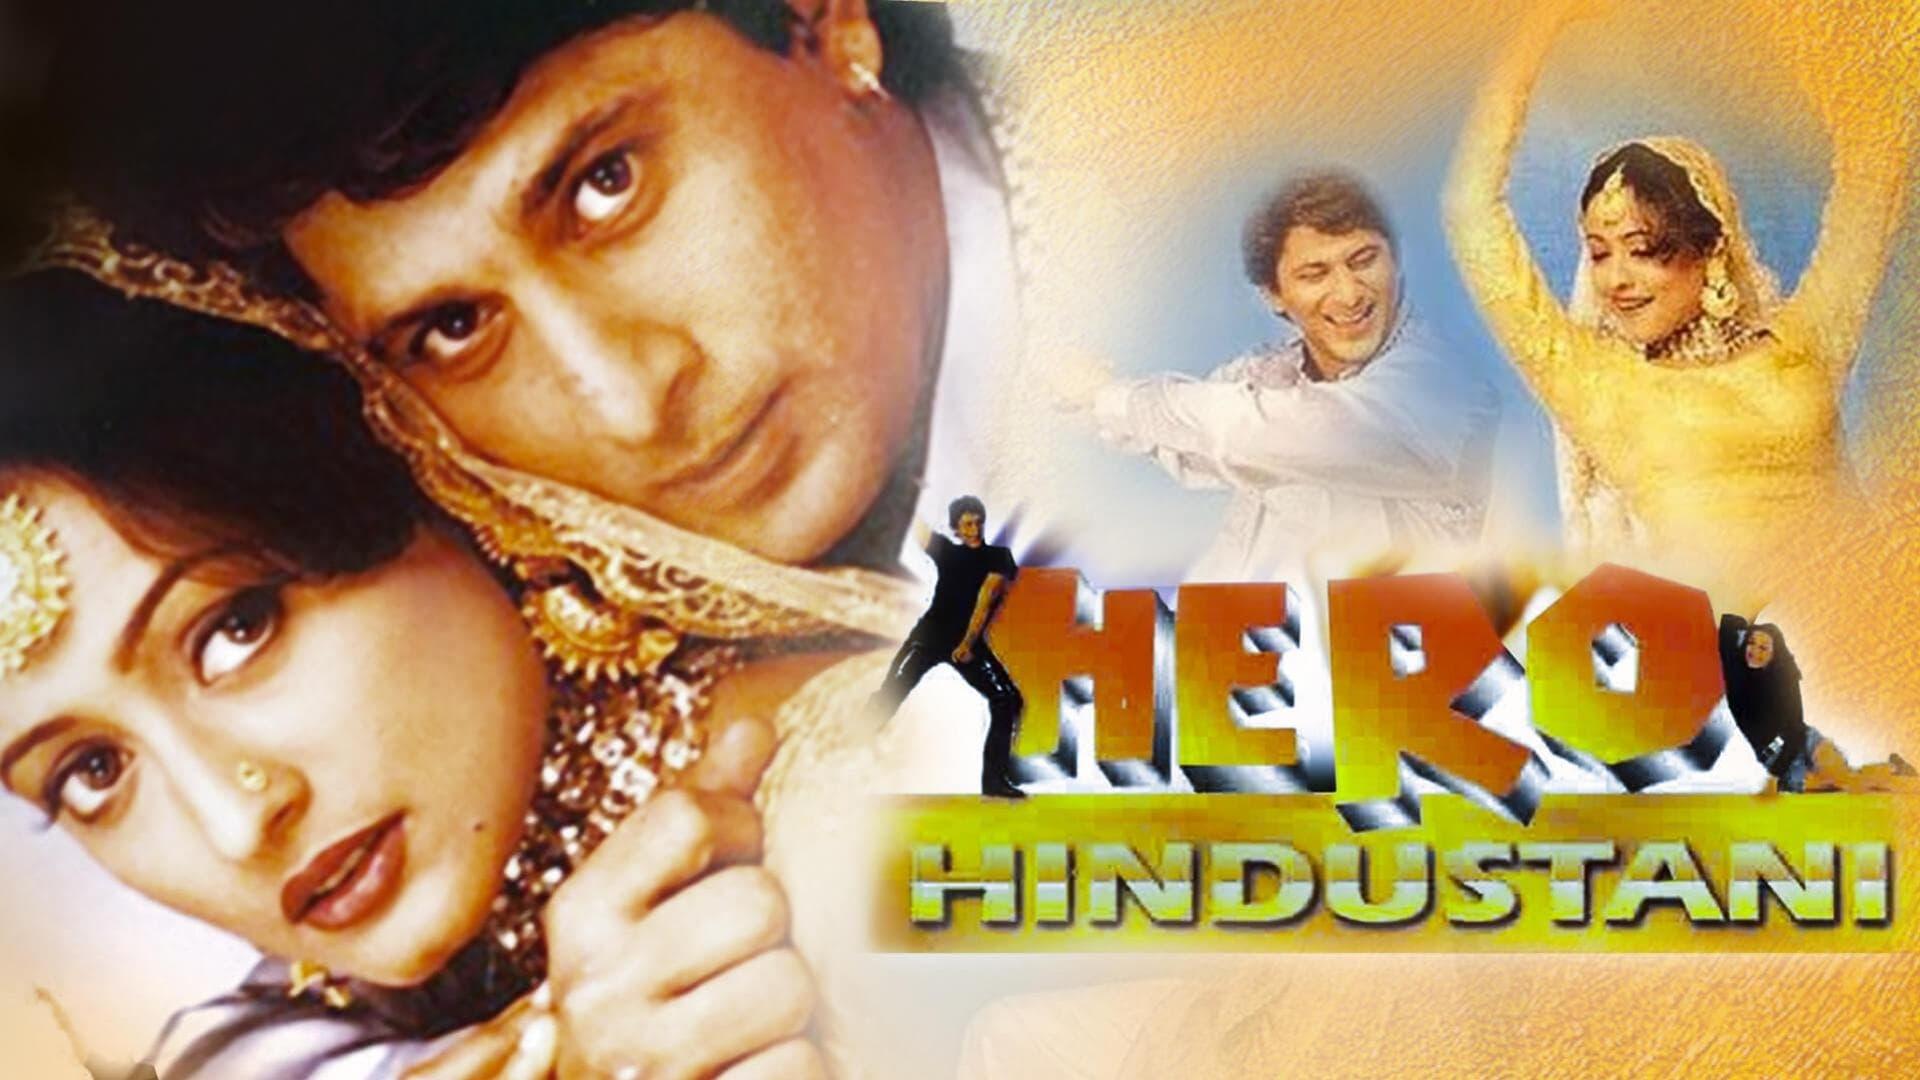 Hero Hindustani backdrop